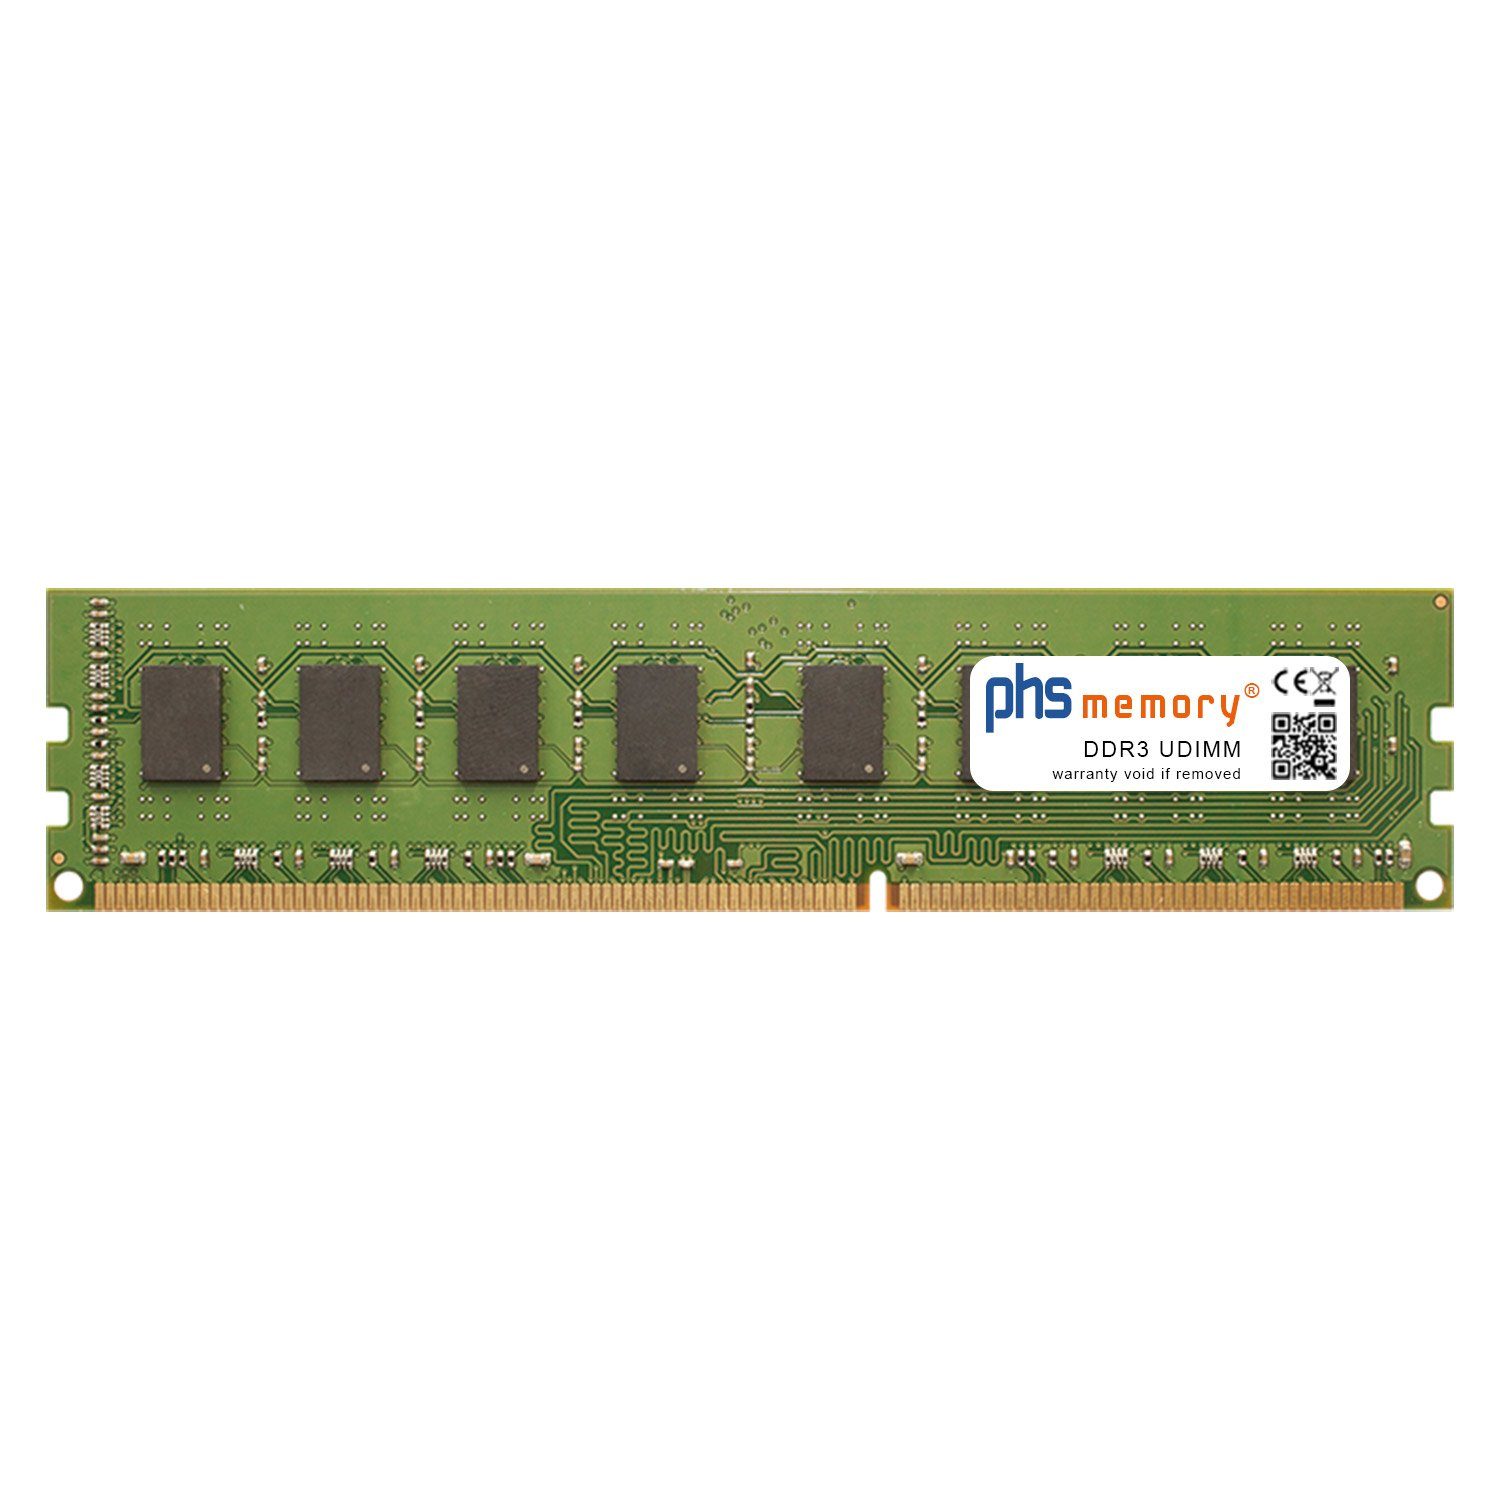 PHS-memory RAM für HP Pavilion p6-2303elm Arbeitsspeicher